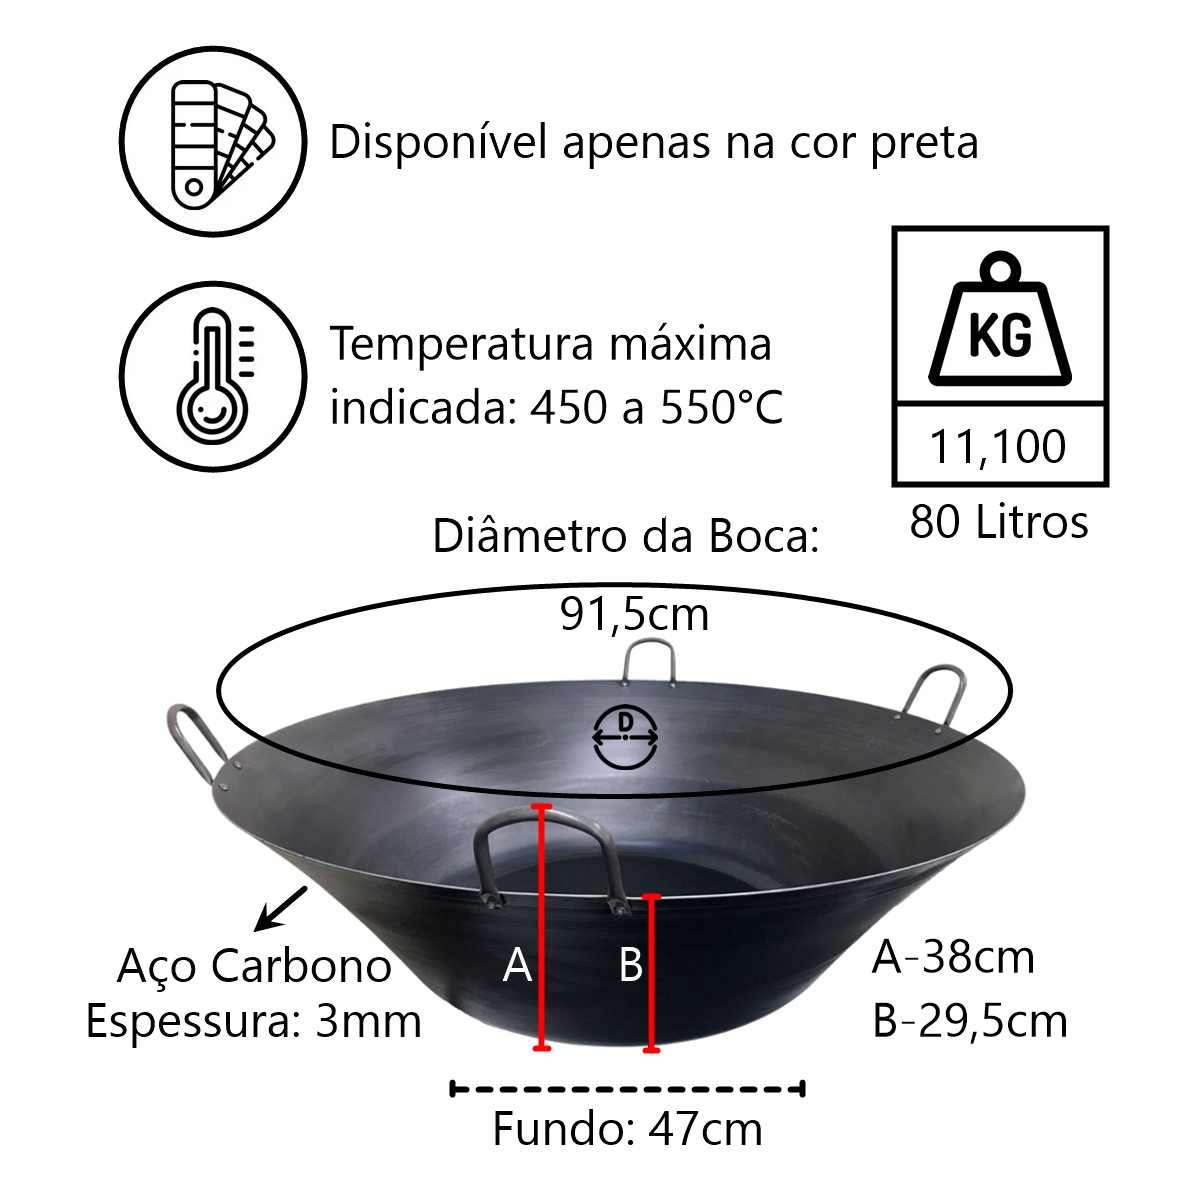 Tacho Beira Alta Preto Aço Carbono 80 Litros 91,5cm Diâmetro